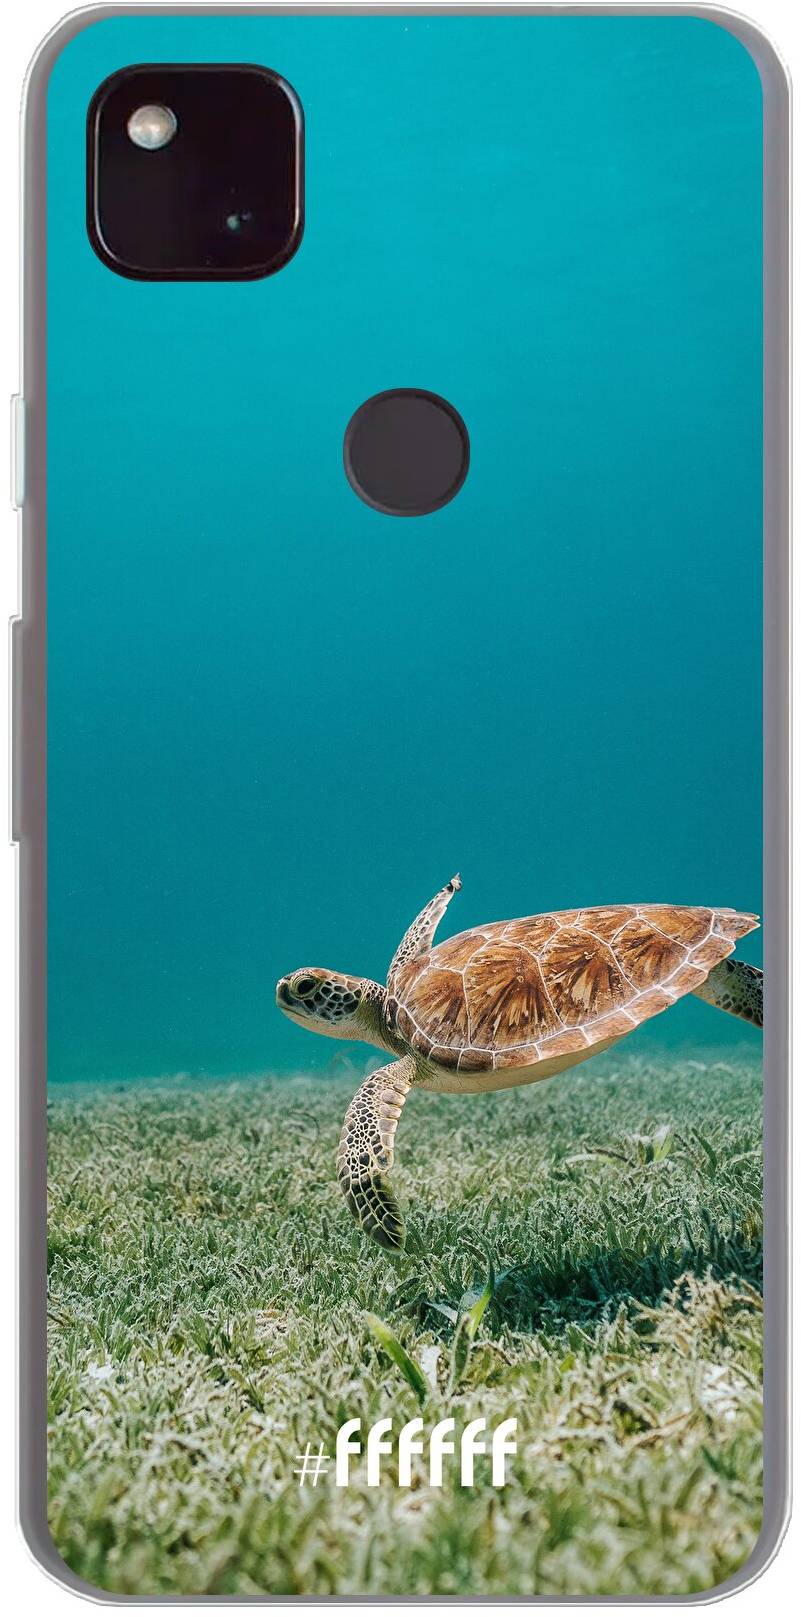 Turtle Pixel 4a 5G